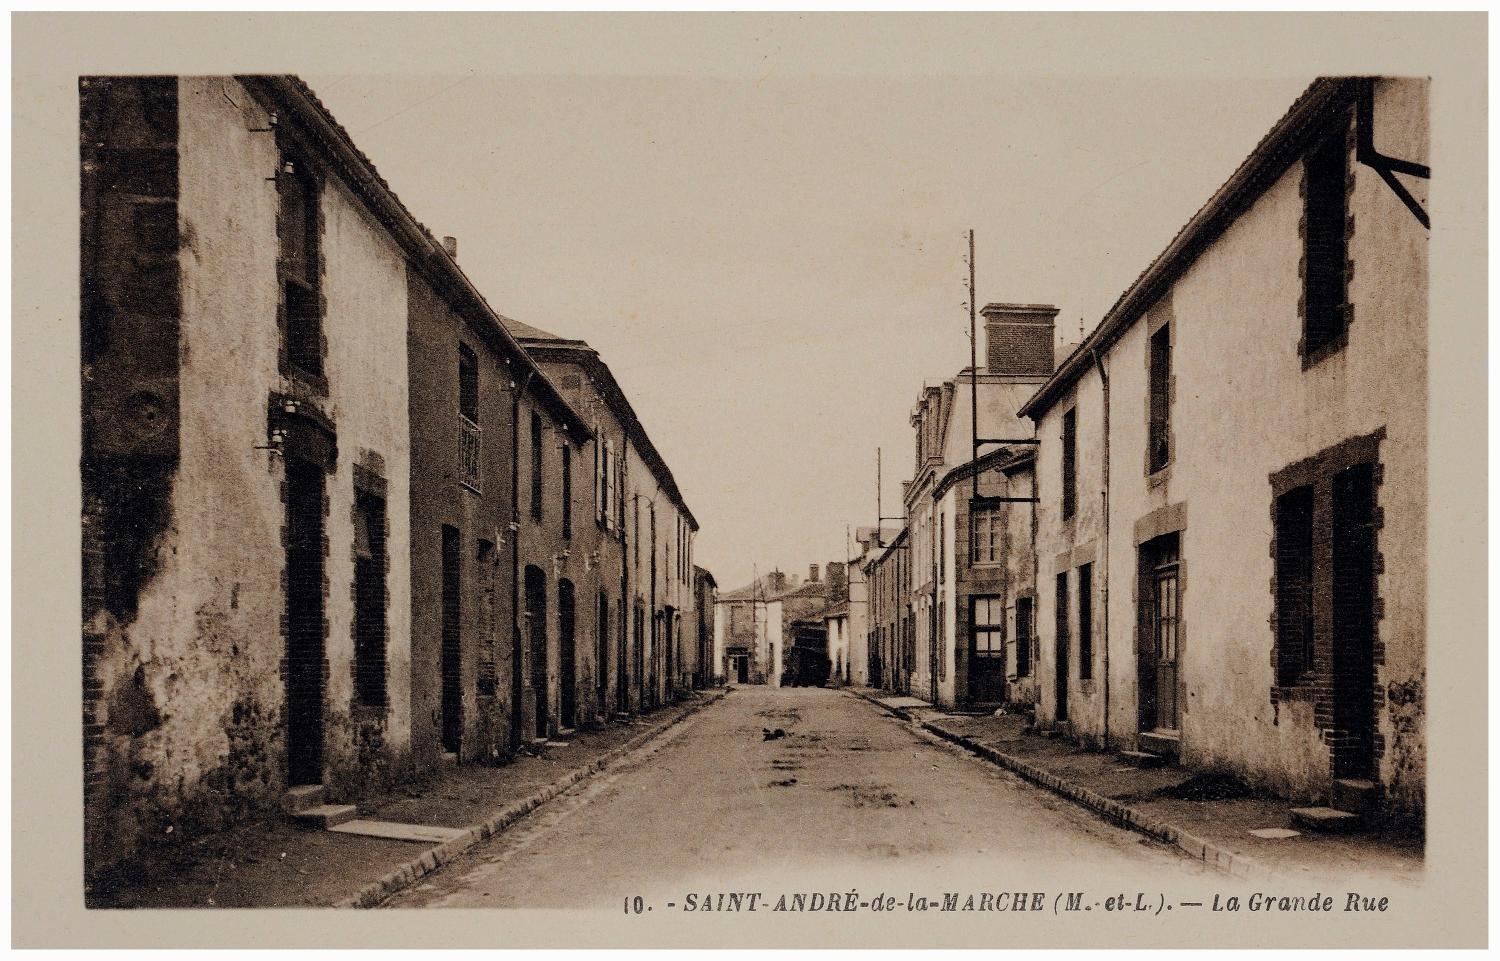 Présentation du patrimoine industriel de la commune de Saint-André-de-la-Marche